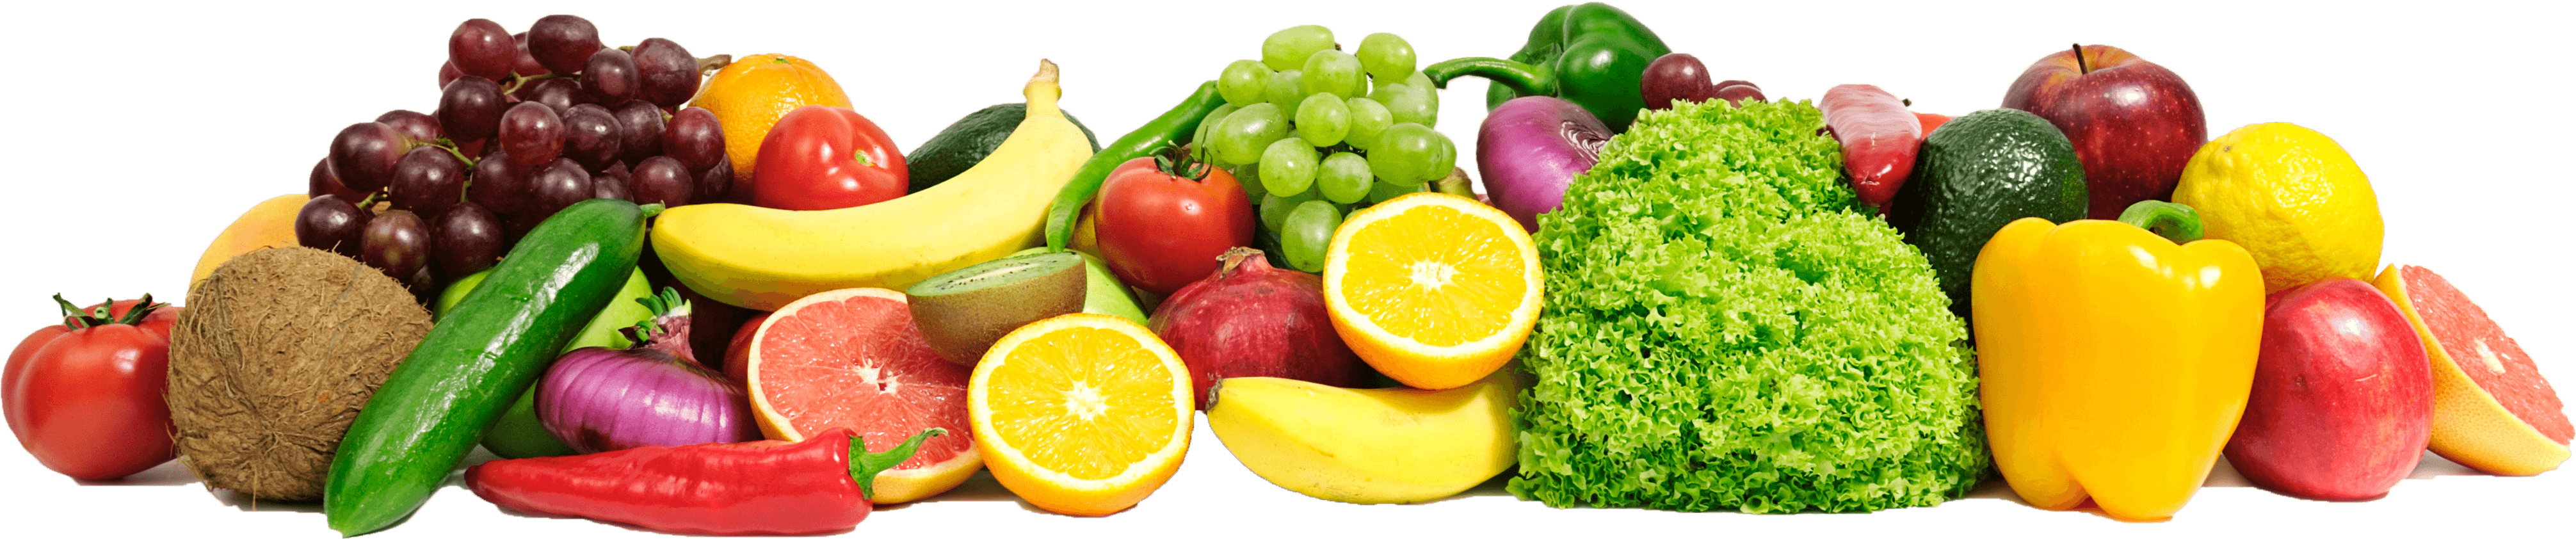 Buah-buahan segar dan sayuran latar belakang Transparan